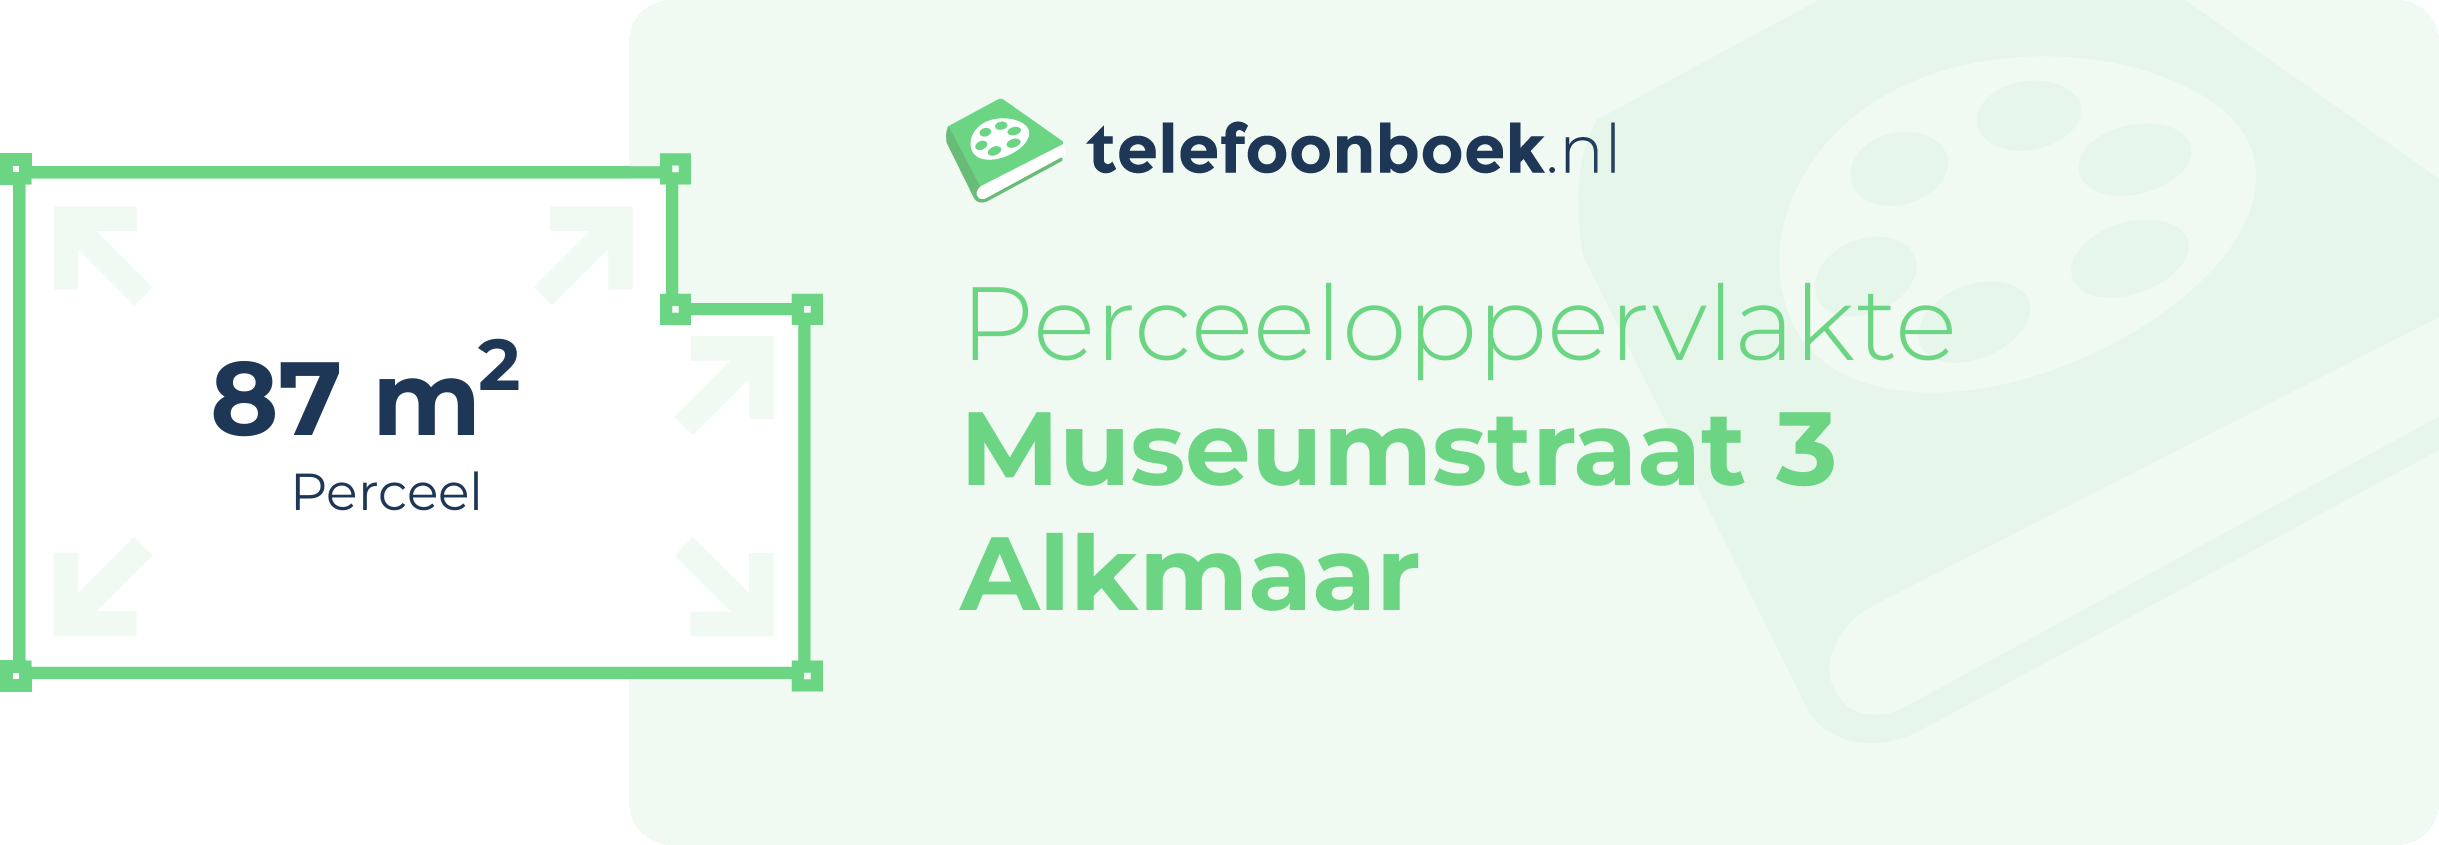 Perceeloppervlakte Museumstraat 3 Alkmaar